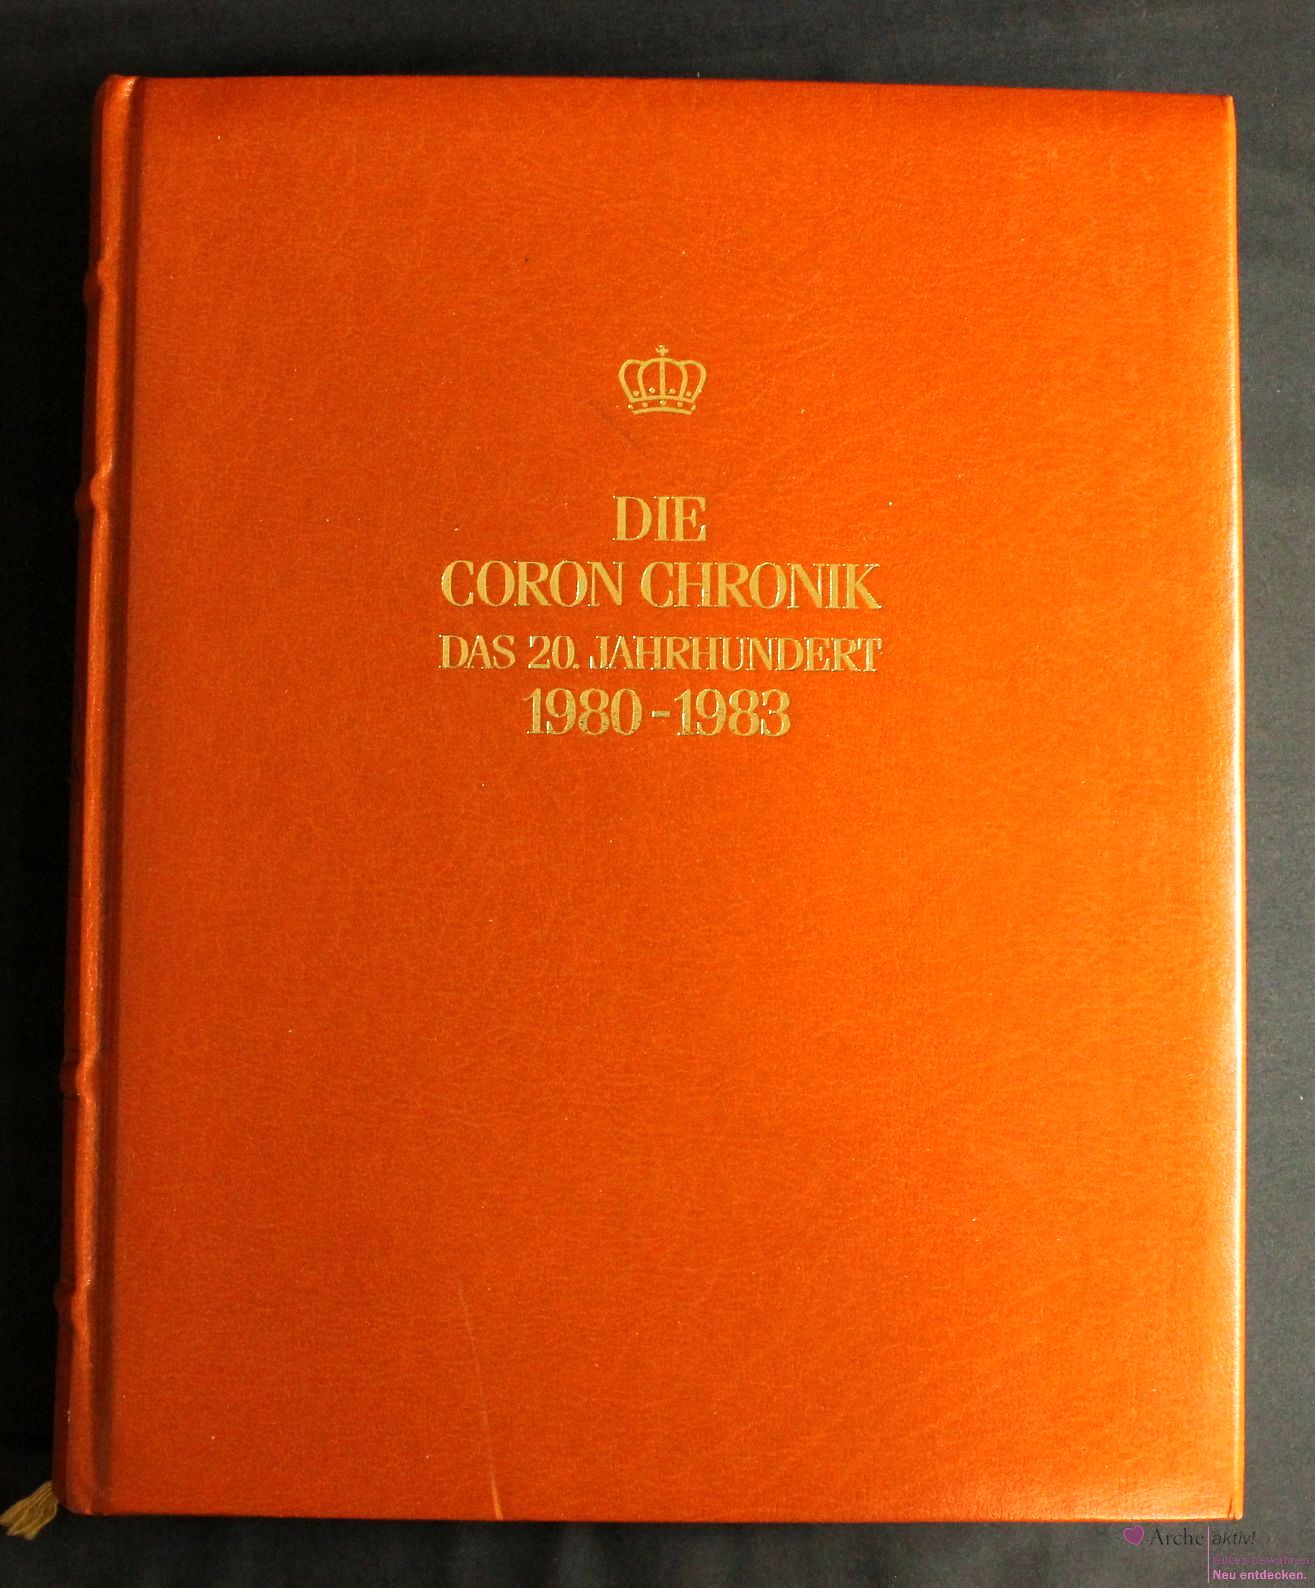 Die Coron Chronik - Das 20. Jahrhundert 1980 - 1983, Band 21, mit Gold-Kopfschnitt, gebraucht